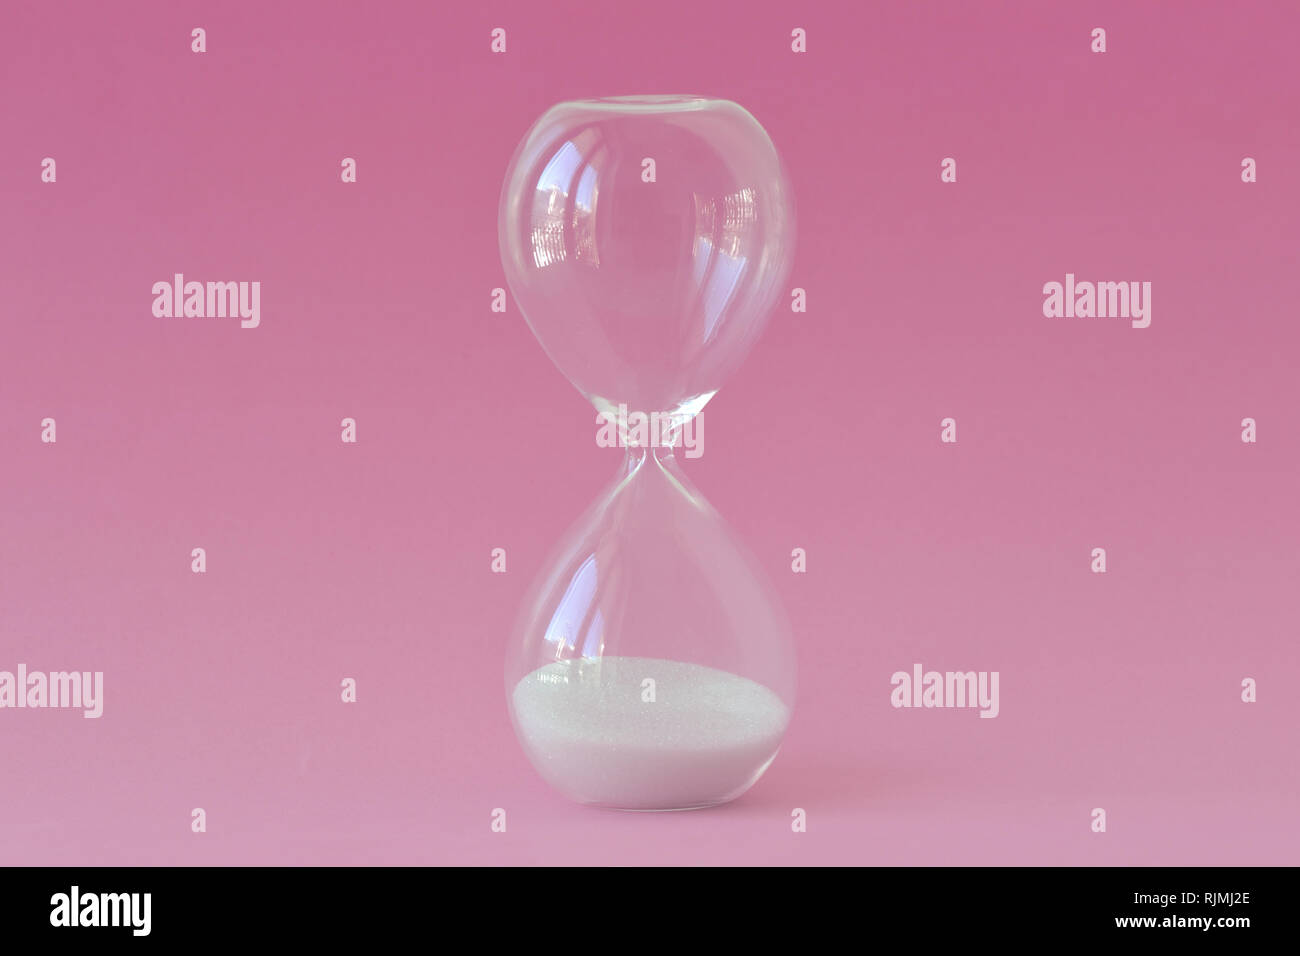 Hourglass sur fond rose - Concept de l'infertilité et l'horloge biologique chez les femmes Banque D'Images